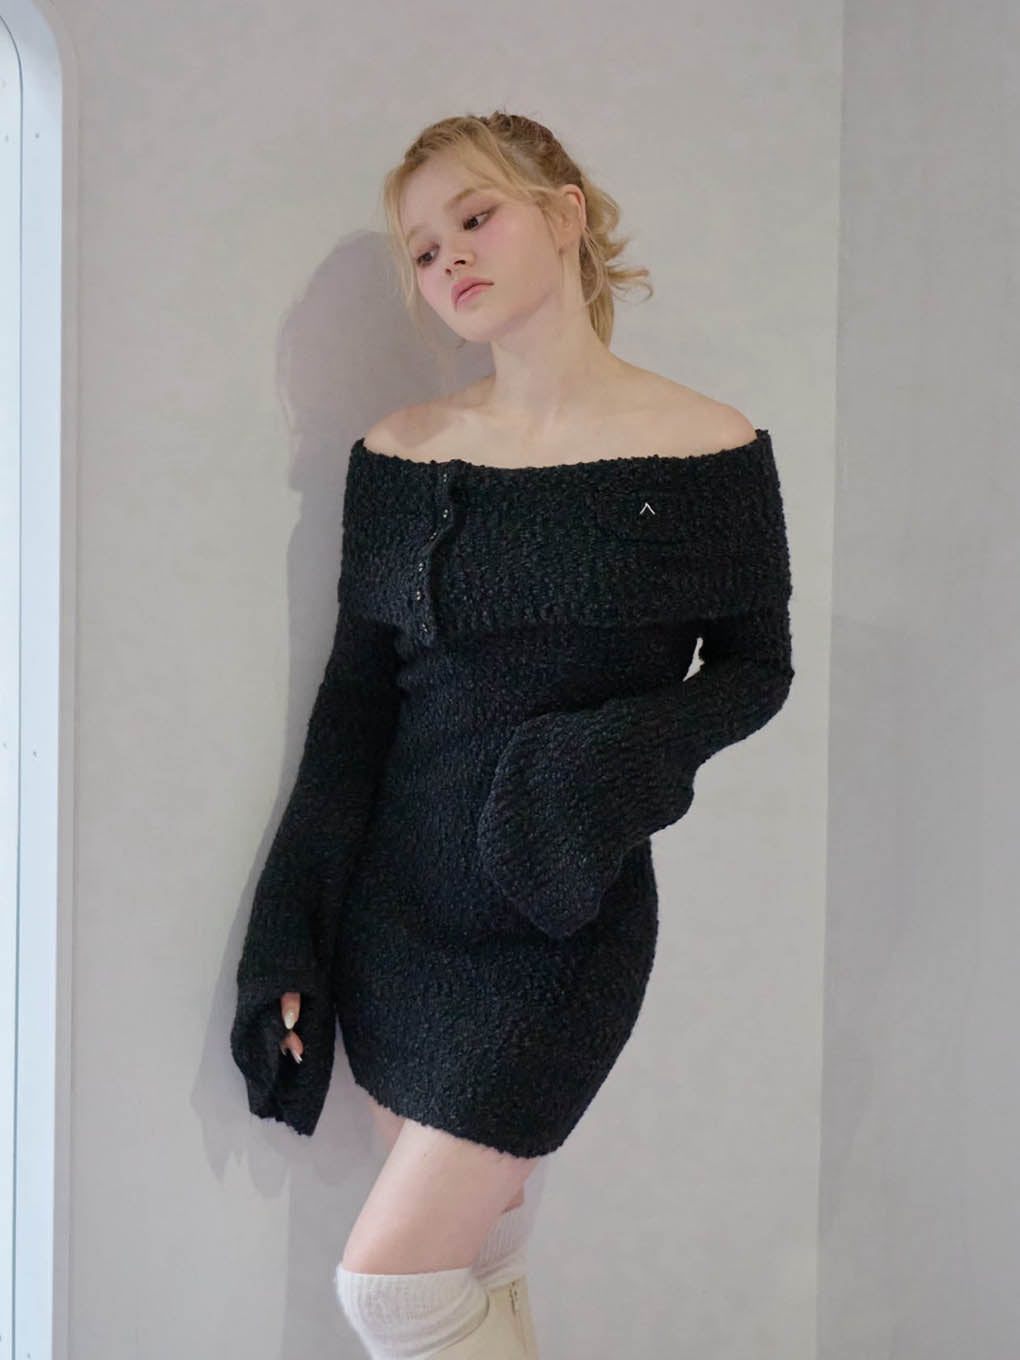 andmary Aurora knit mini dress一度着てはいますがほぼ新品です